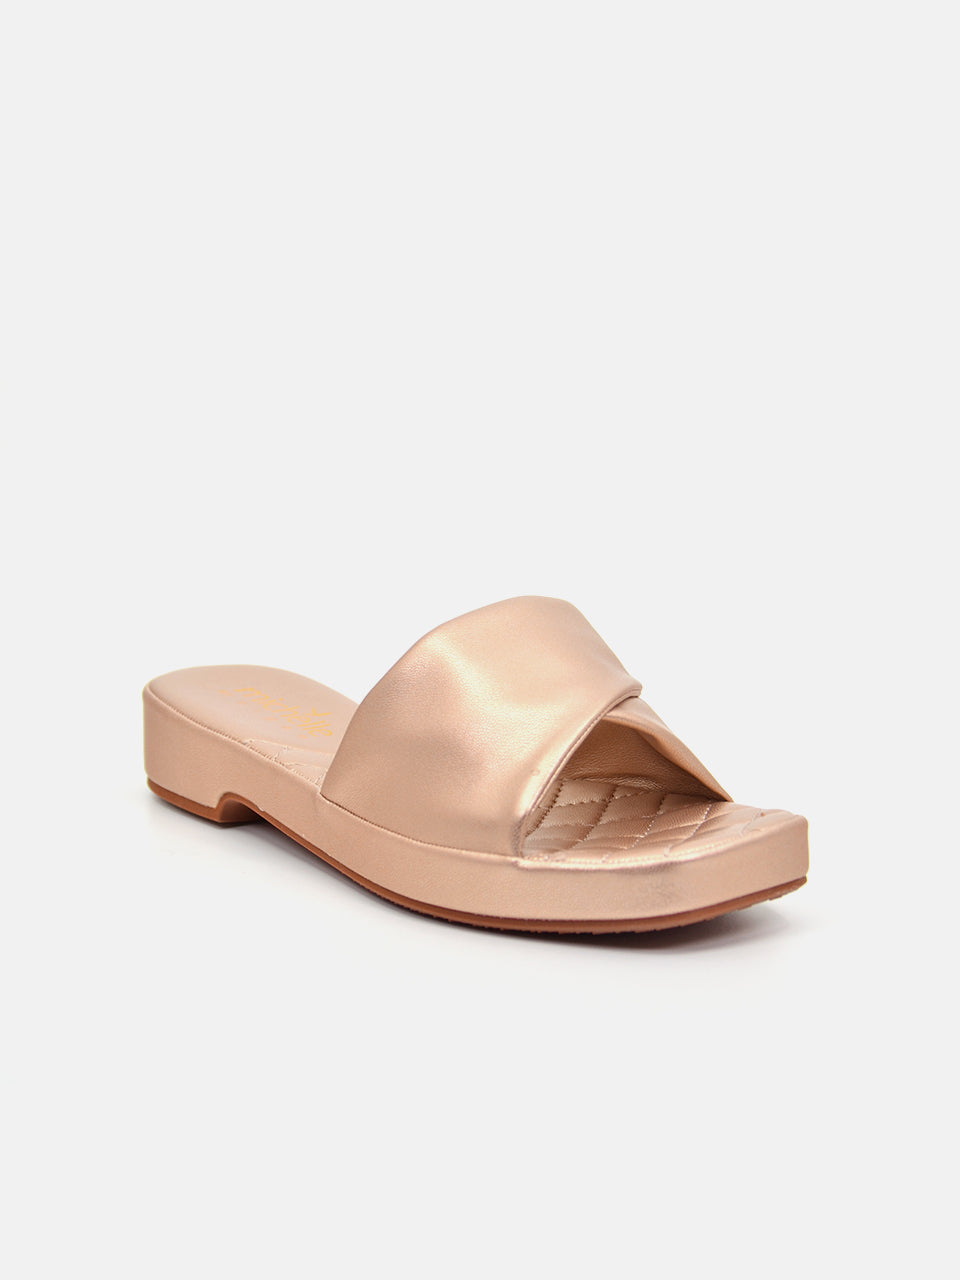 Michelle Morgan 114ZD612 Women's Flat Sandals #color_Pink